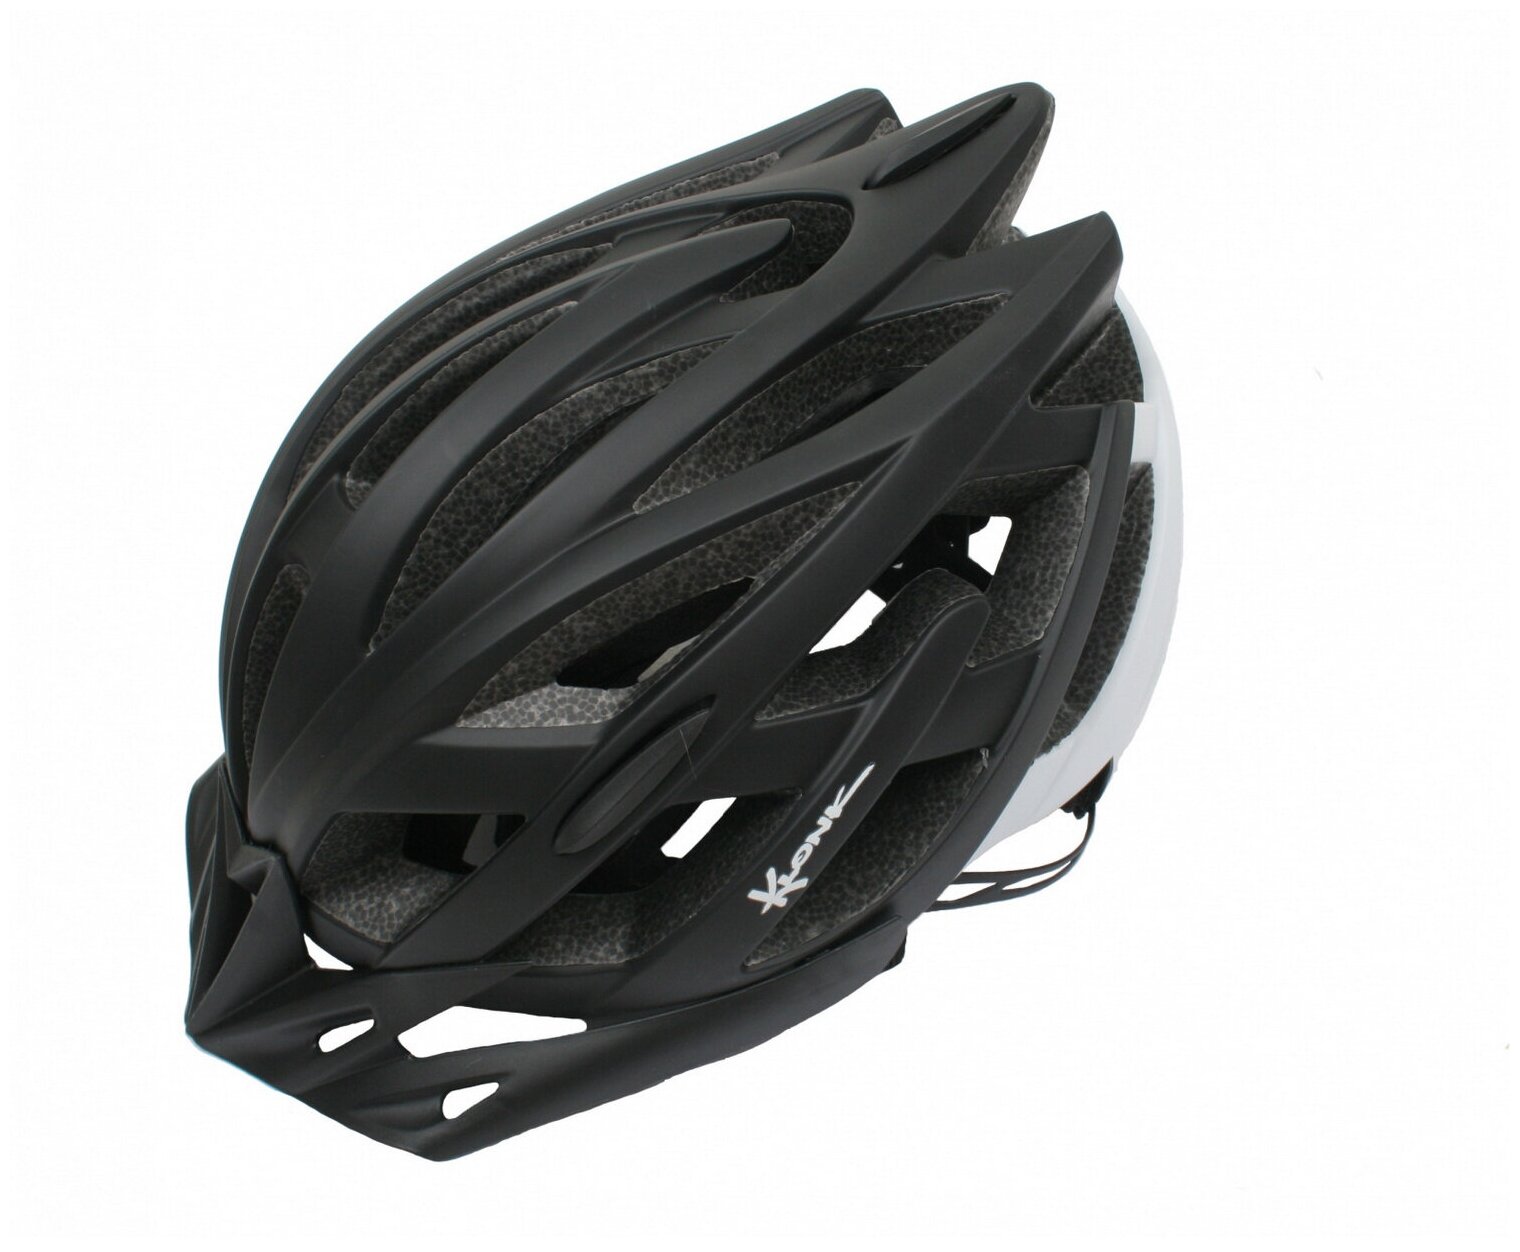 Forward Шлем защитный Klonk MTB (12014), цвет Черный-Белый, ростовка S/M